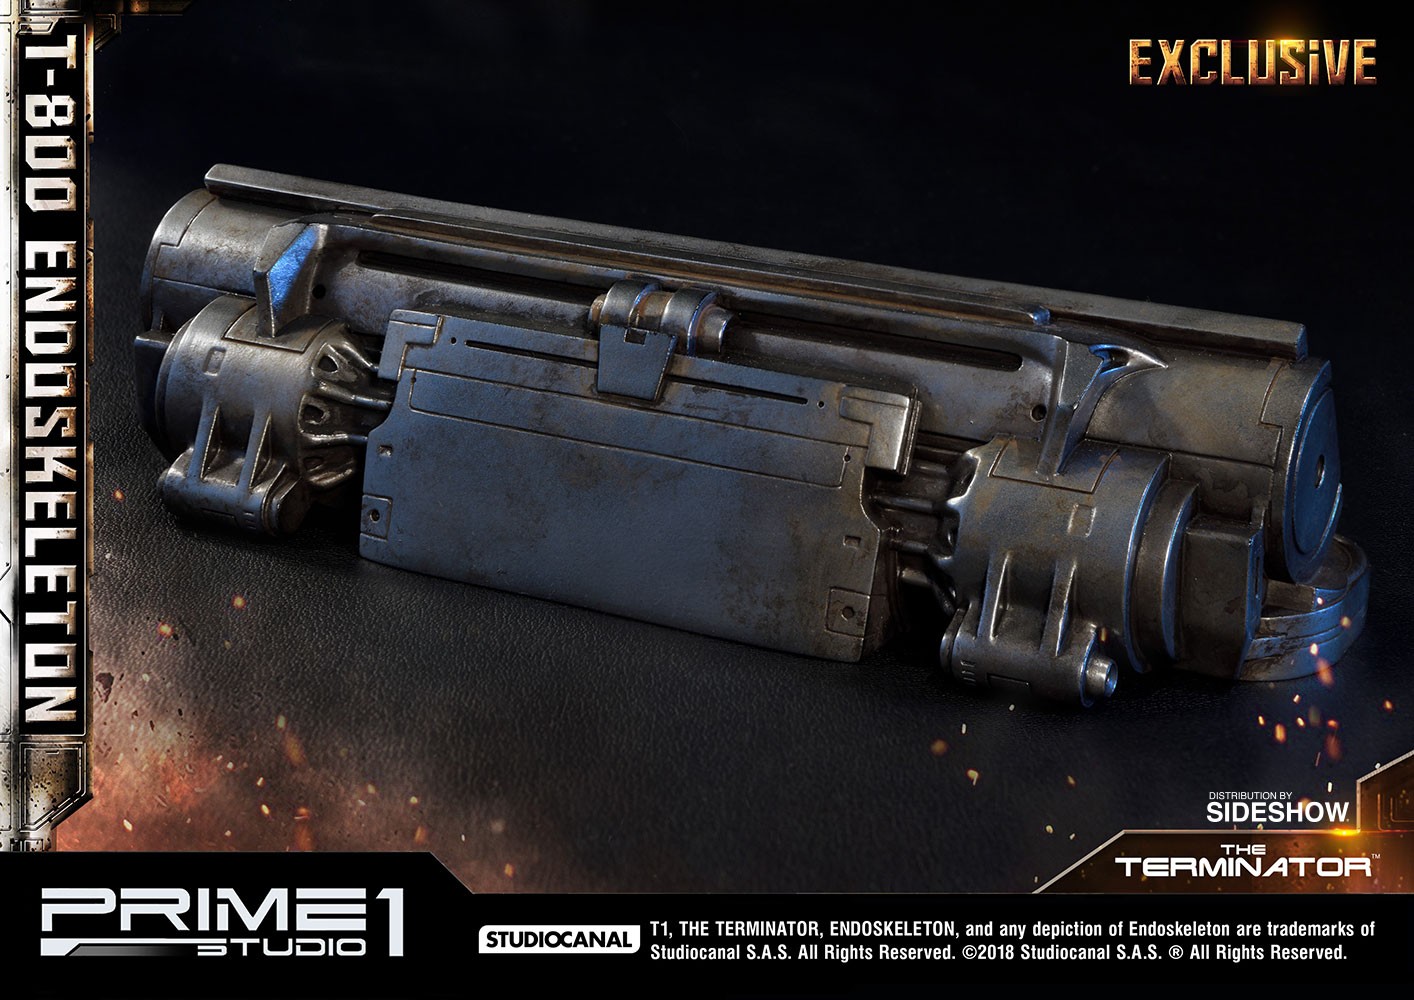 T-800 Endoskeleton The Terminator Exclusive Edition - Prototype Shown